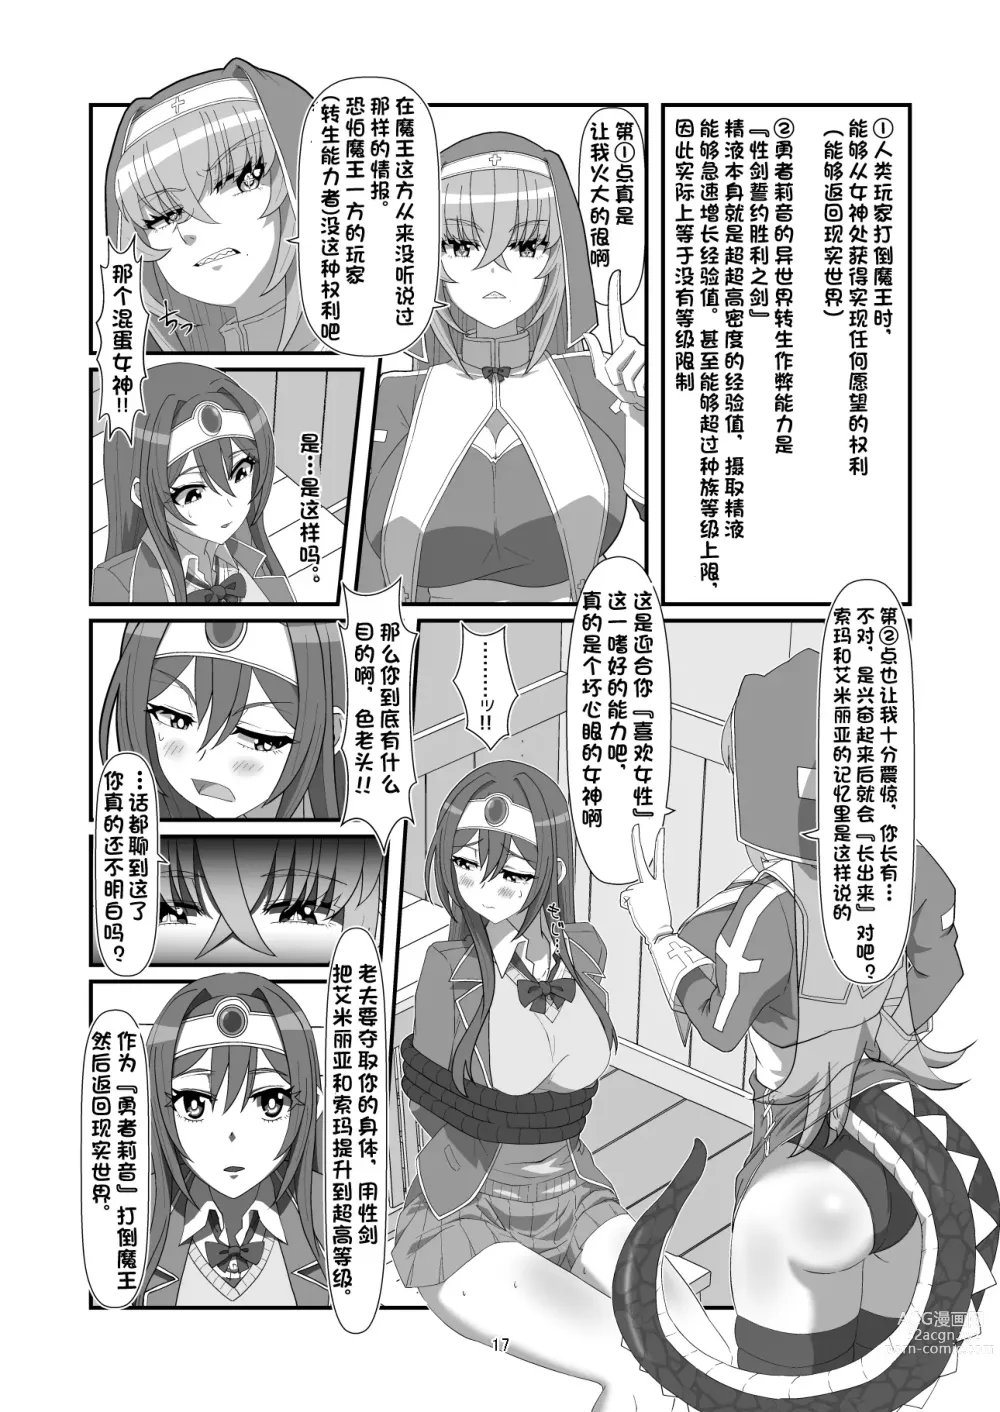 Page 16 of doujinshi Tokage no Shippo - Lizards Tail